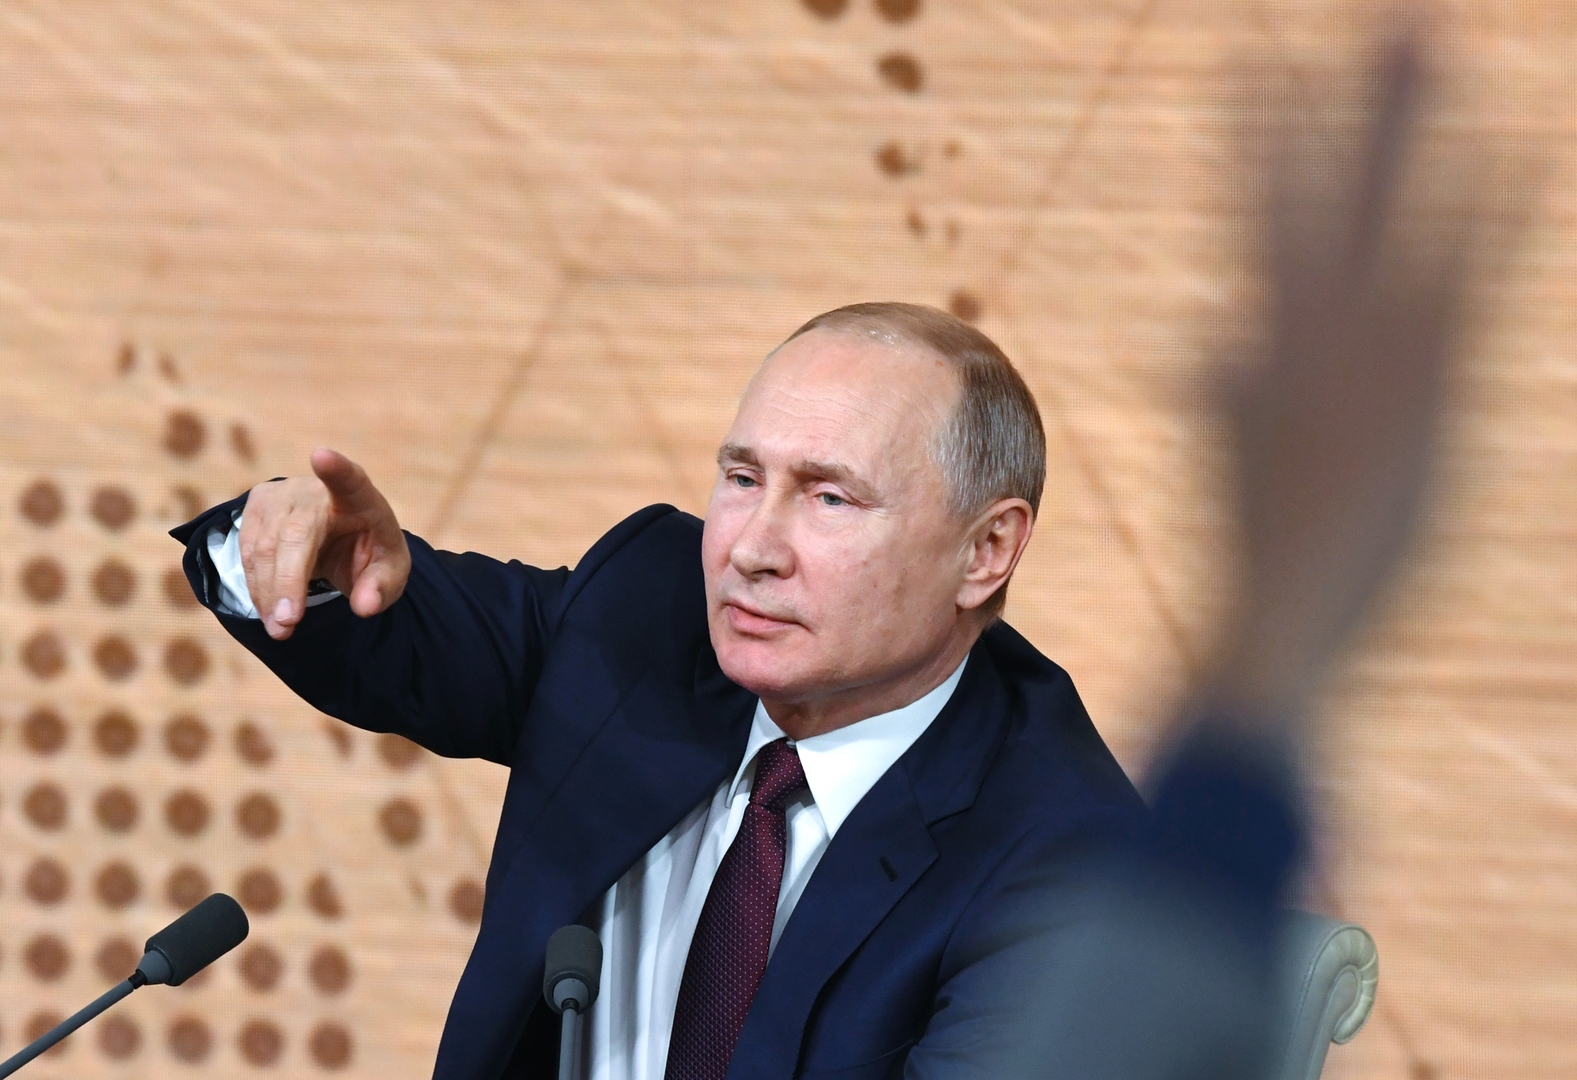 بوتين: روسيا مستعدة لتسليم مرتكبي الجرائم السيبرانية إلى أمريكا لكن بشرط